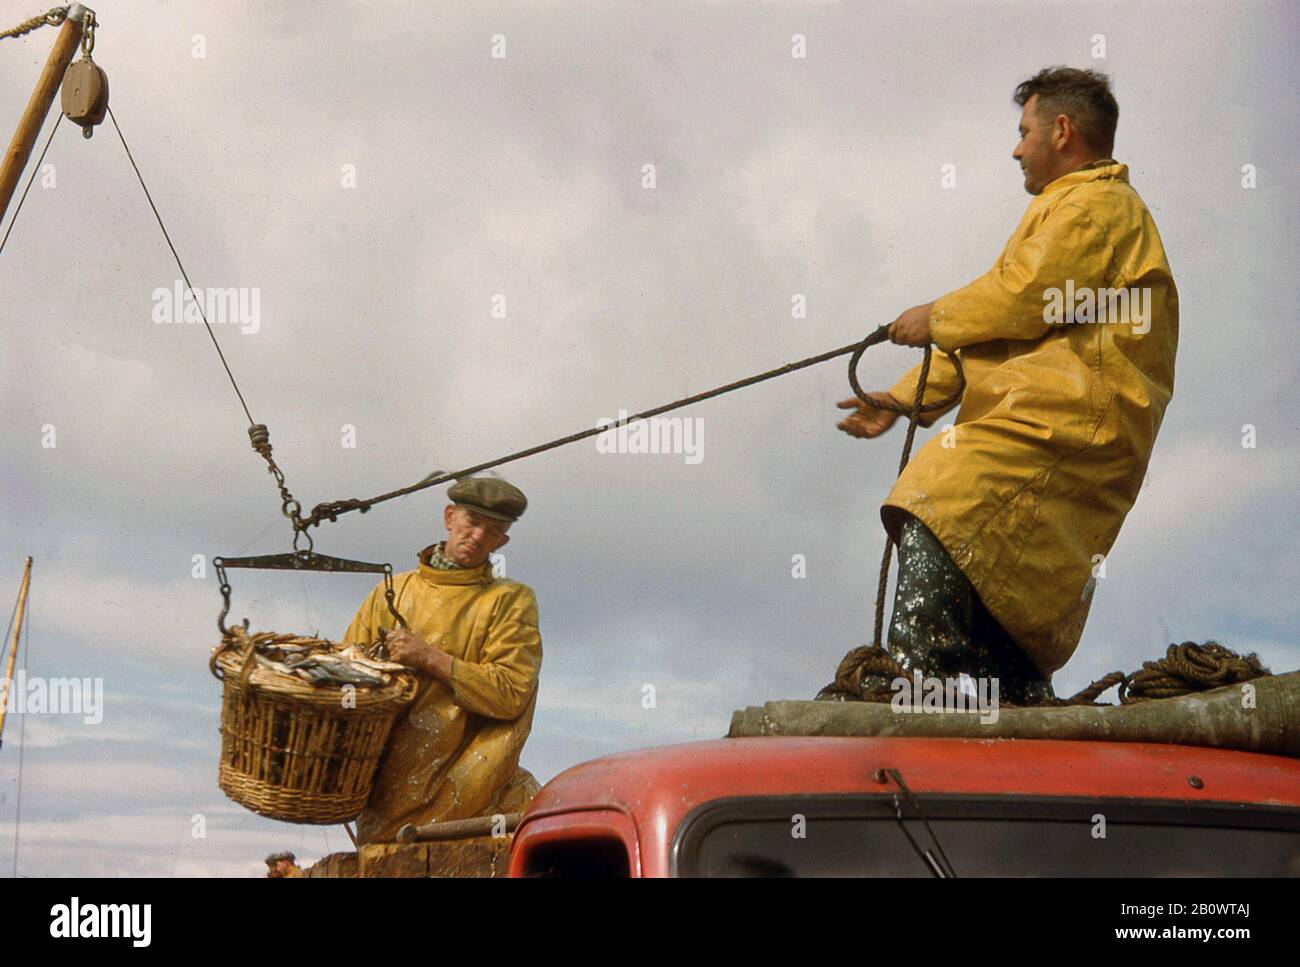 Dans les années 60, deux pêcheurs portant des vestes de pluie imperméables ou des capes jaunes sur un camion à une jetée à l'aide d'une poulie pour décharger un panier de poisson en osier, le hareng de l'Atlantique, l'Écosse, au Royaume-Uni. Banque D'Images